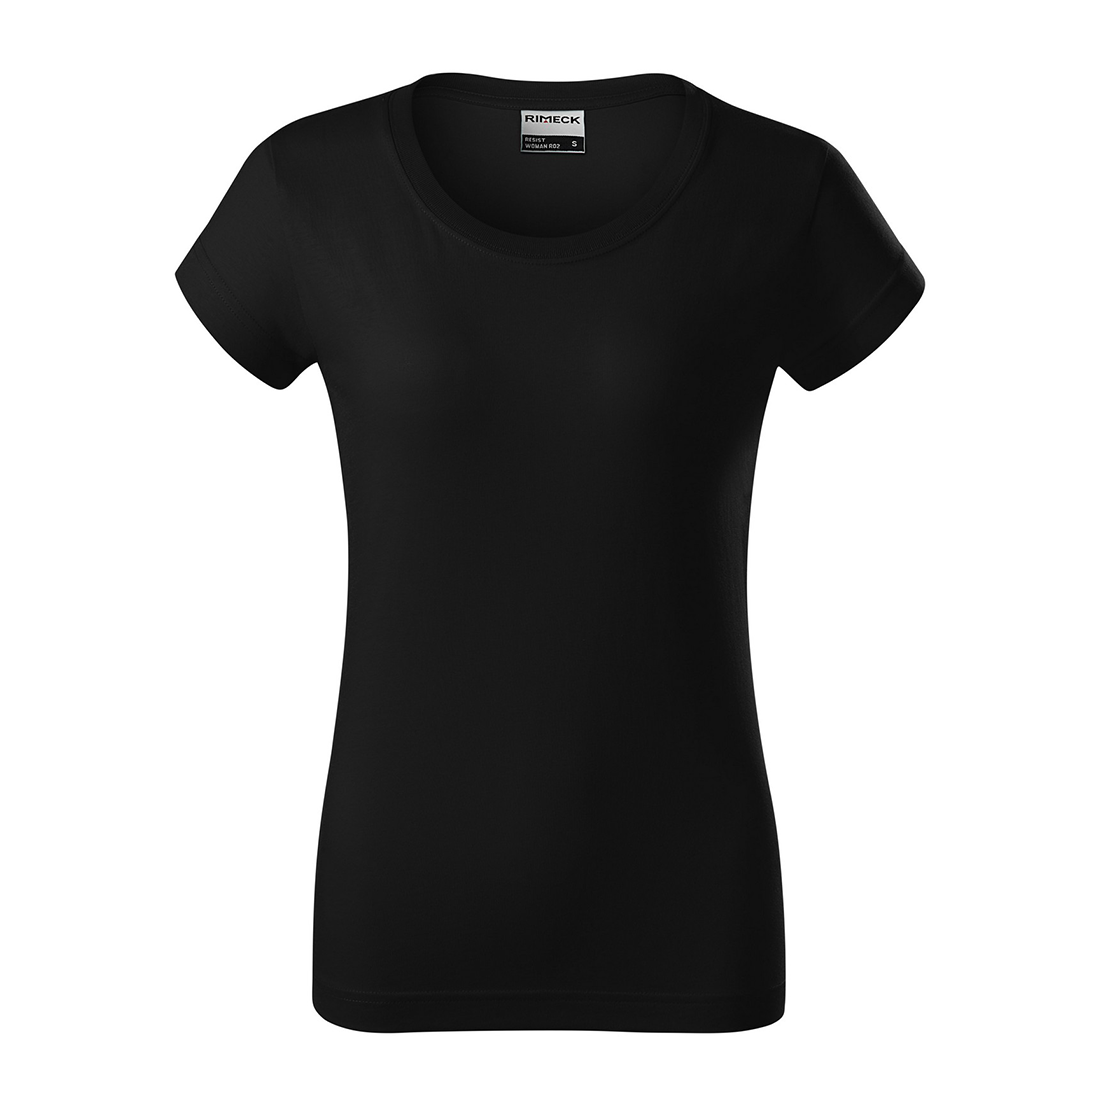 Camiseta de algodón prelavado para mujer - Ropa de protección